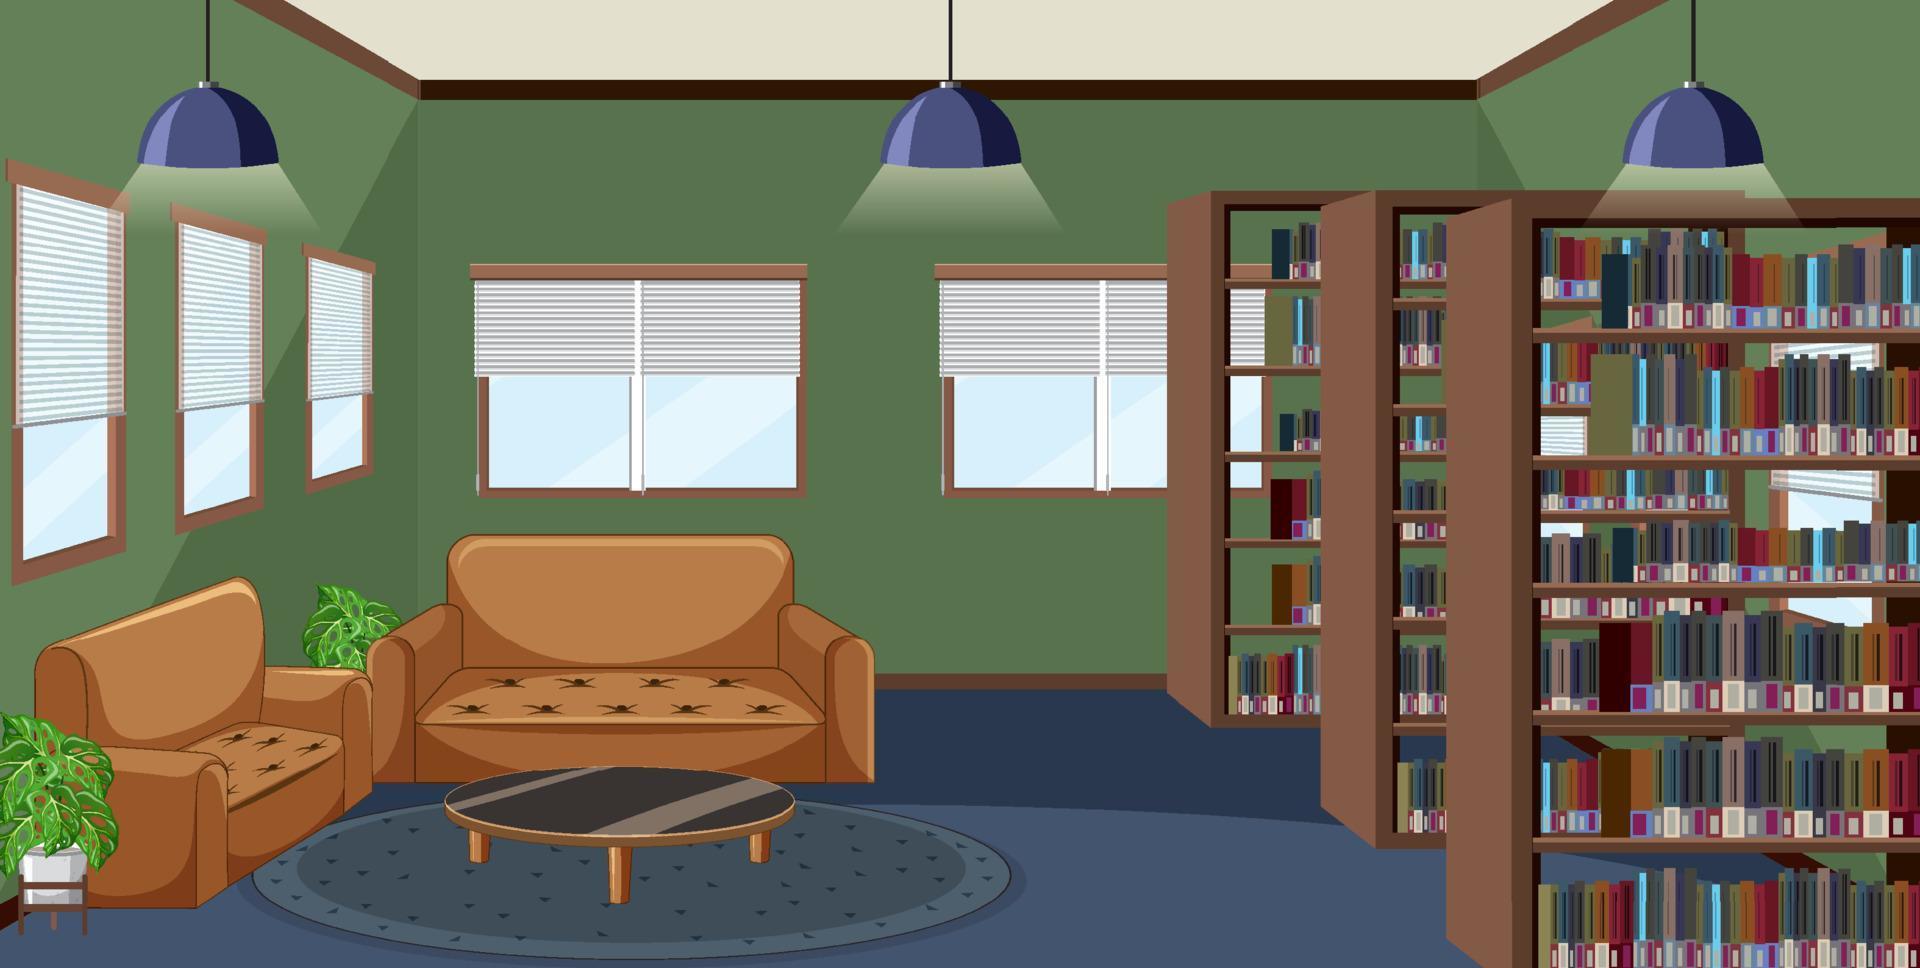 interior design della biblioteca vuota con scaffali vettore